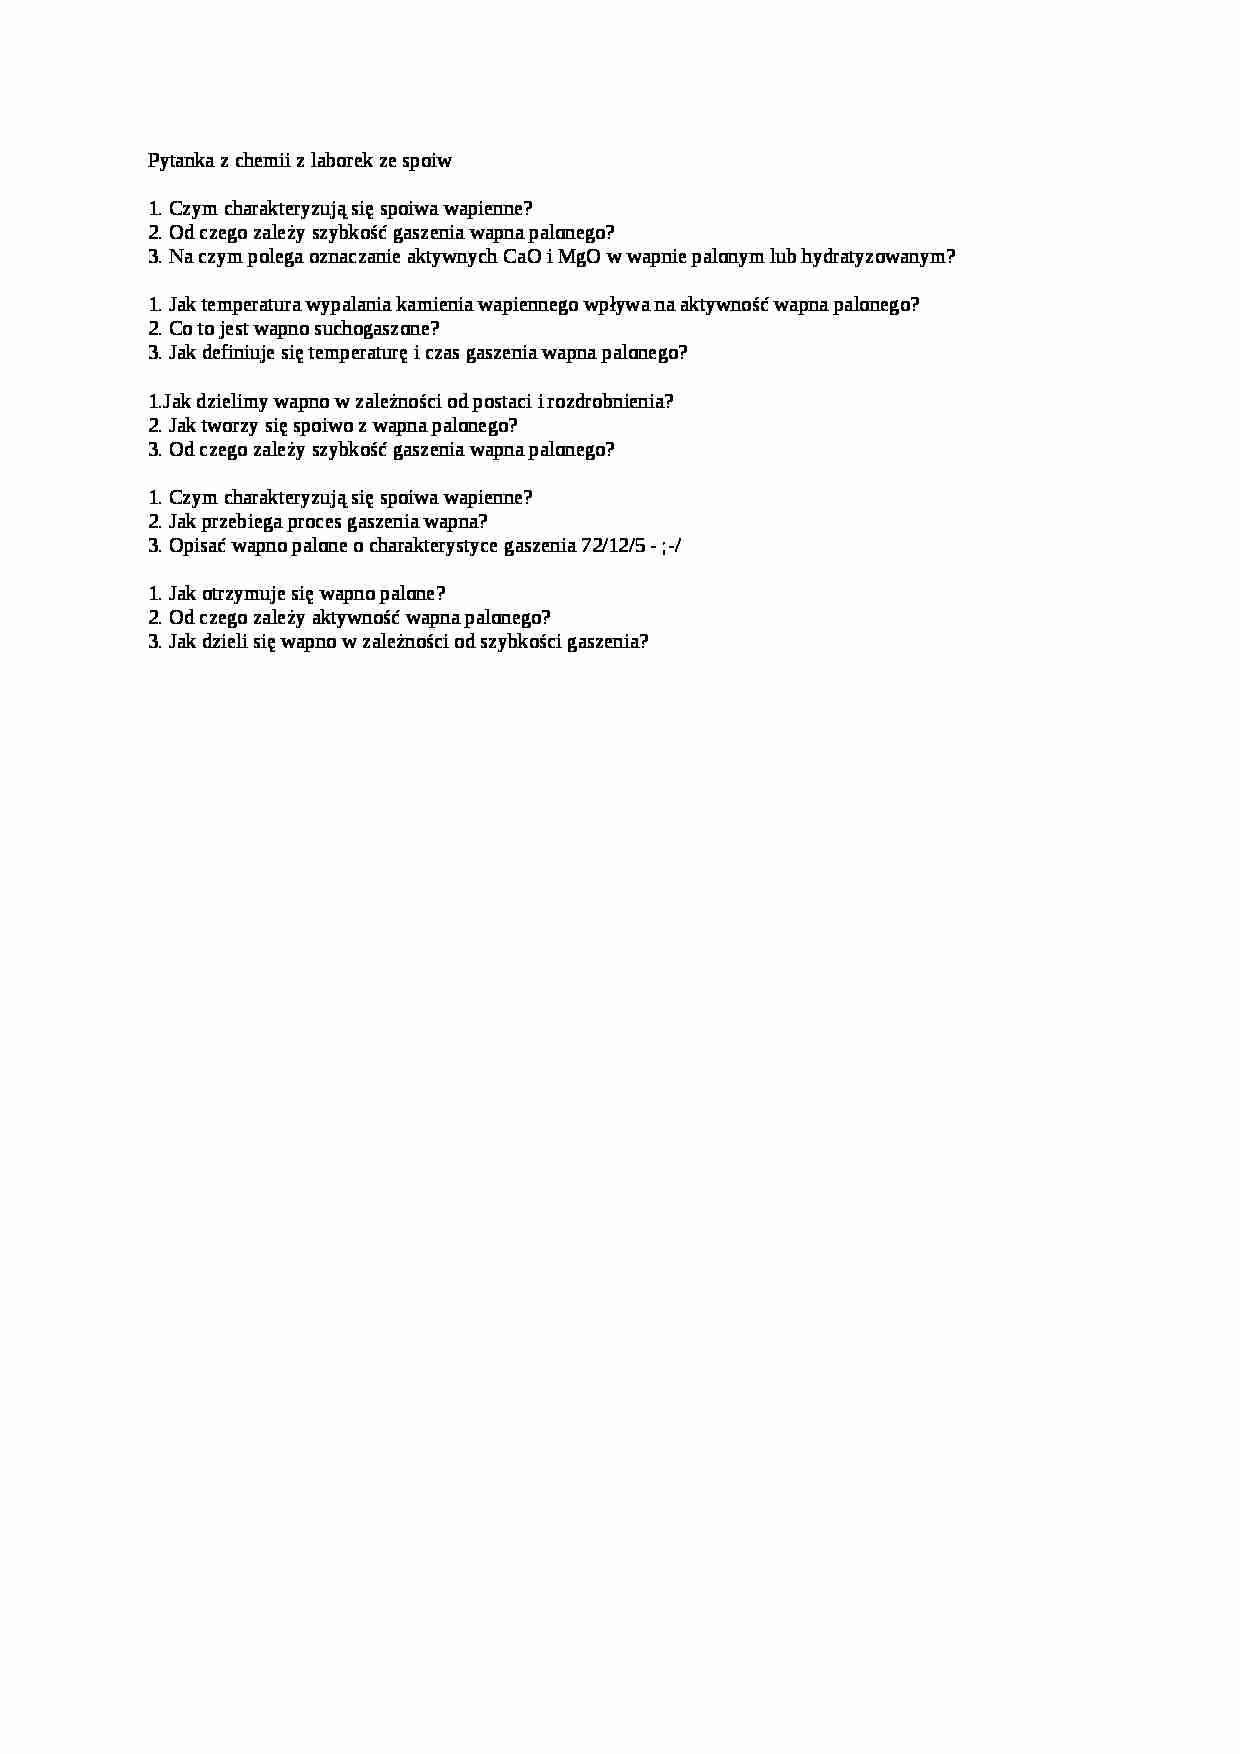 Pytania z chemii ze spoiw wapiennych, materiał na wejściówkę z laborek - strona 1